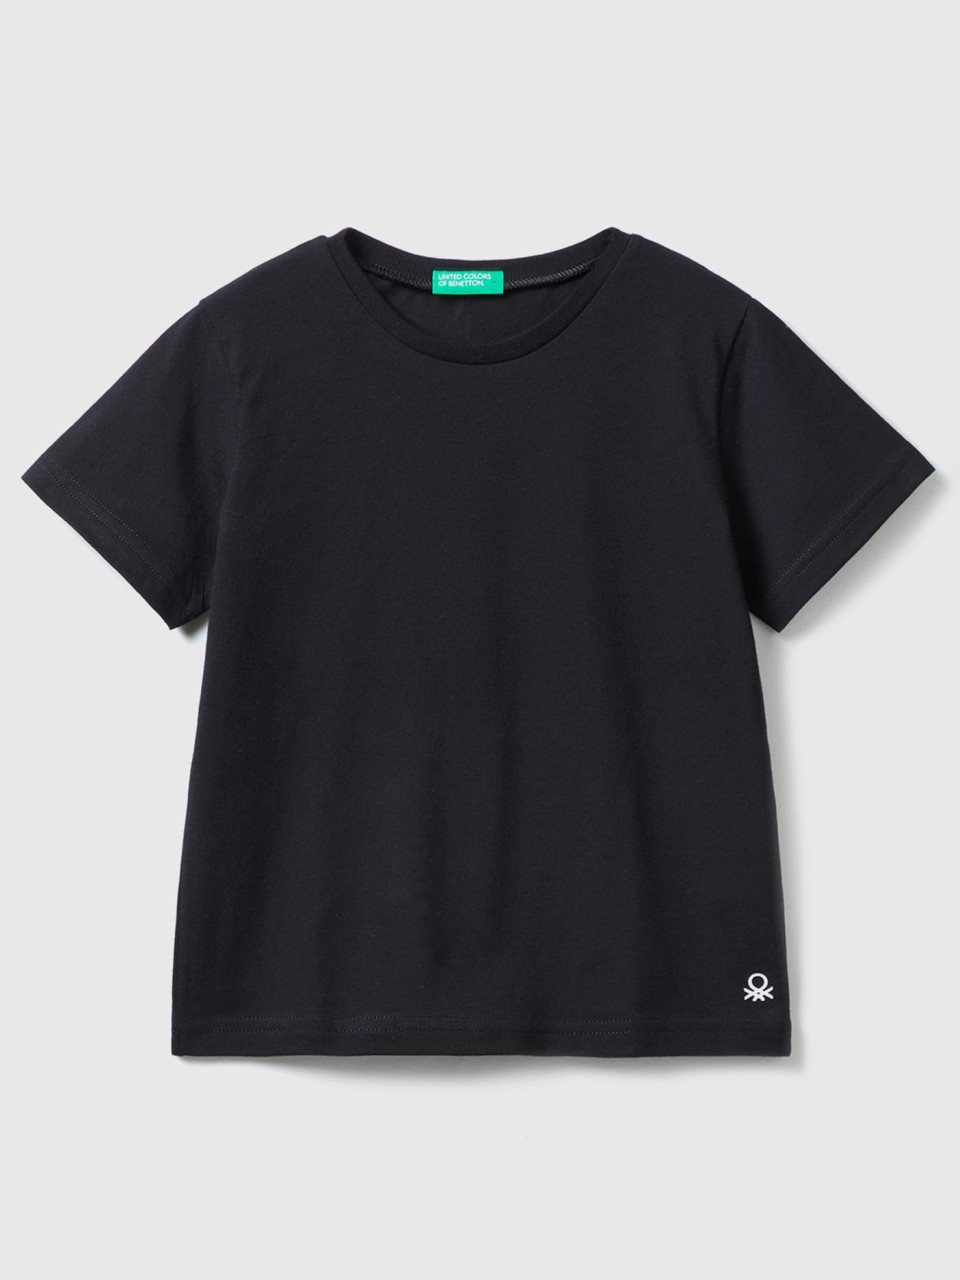 Benetton, T-shirt En Coton Bio, Noir, Enfants